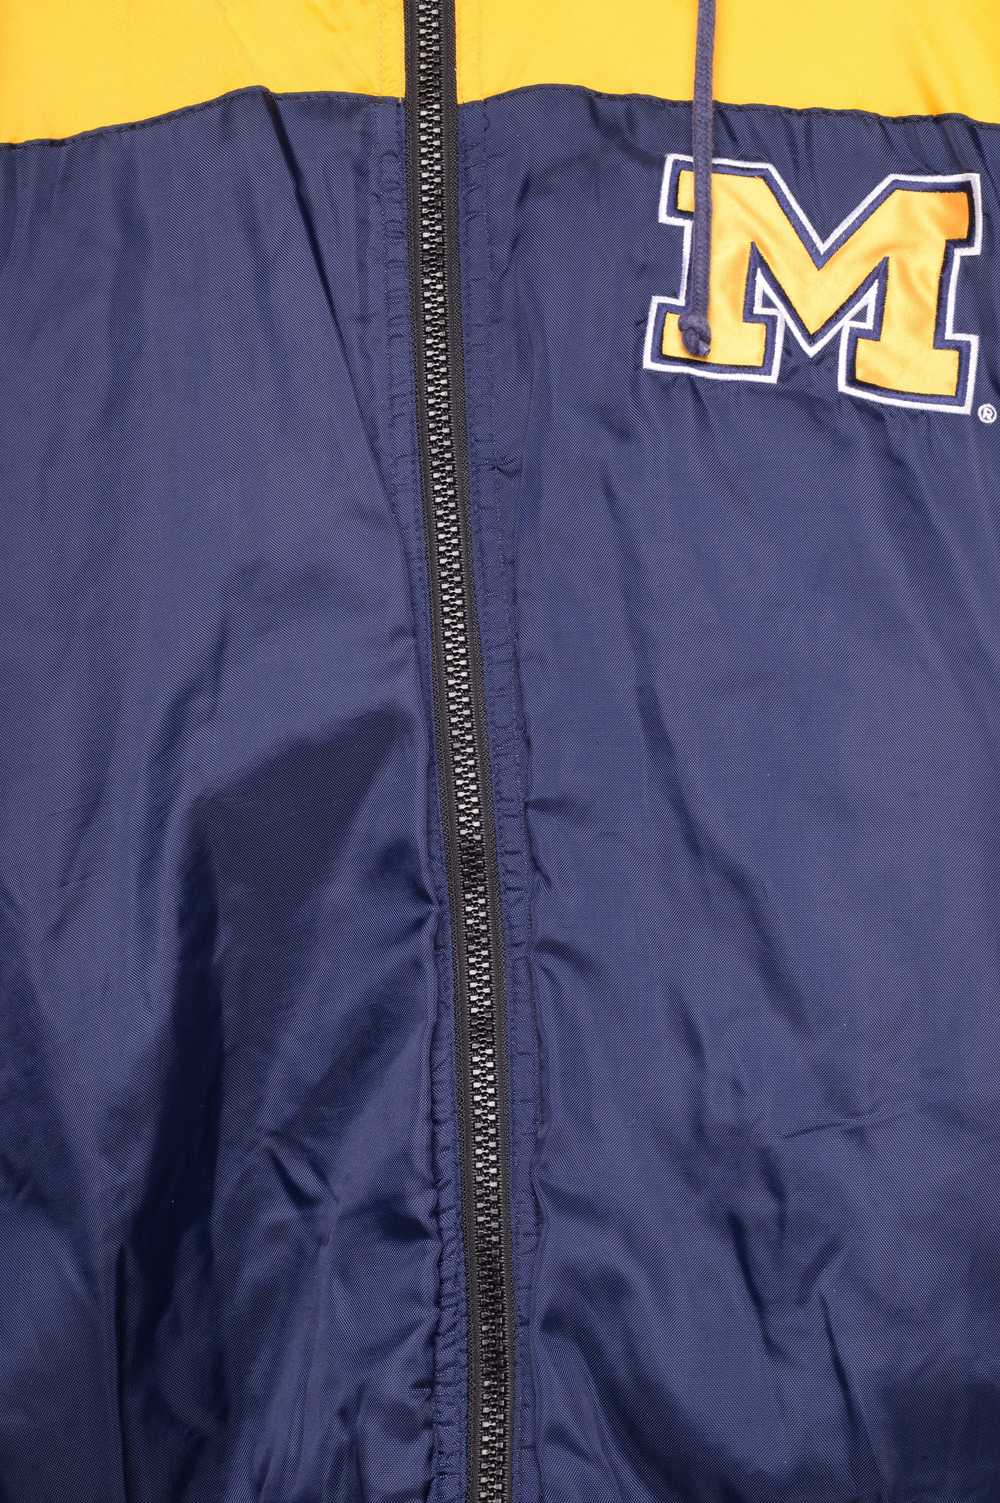 University of Michigan Puffer Jacket - image 3